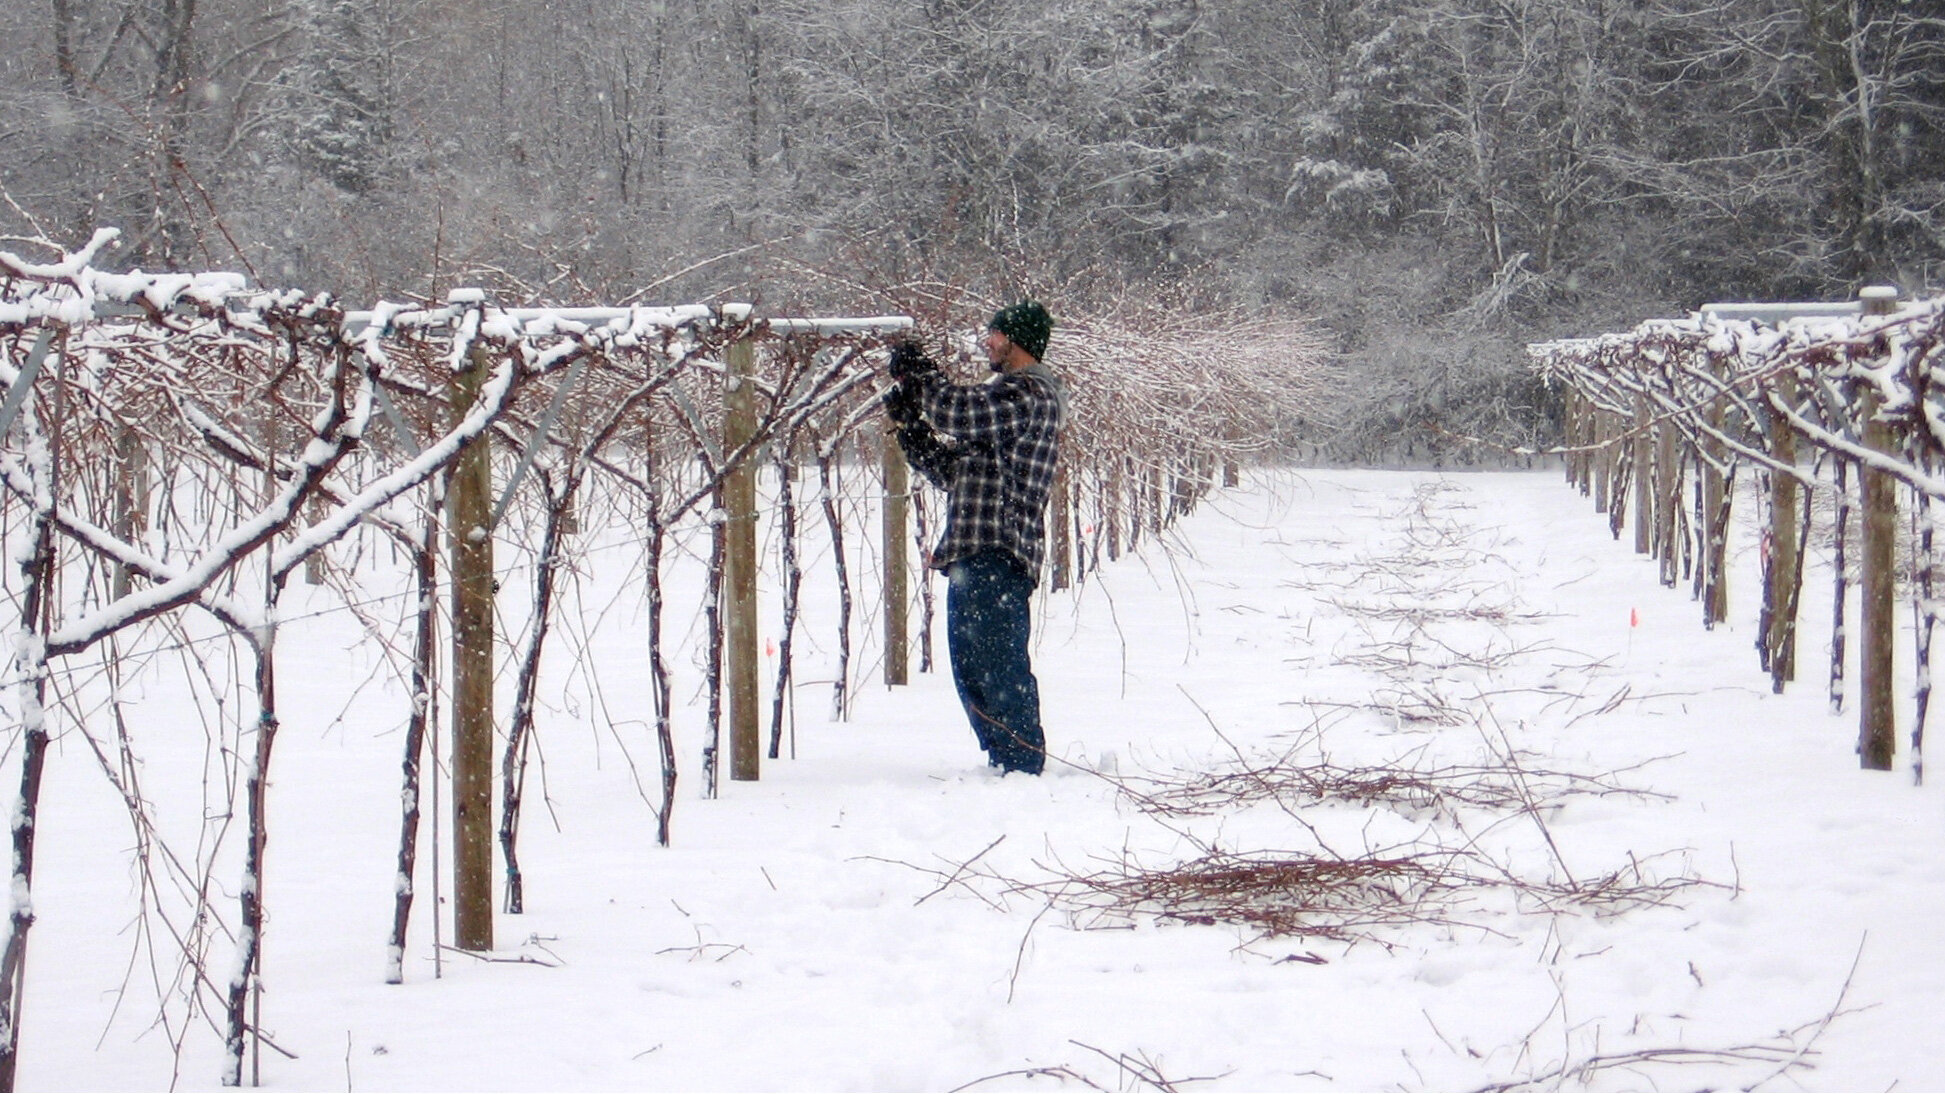 Lincoln-Peak-Vineyard-snowy-pruning-16x9.jpg